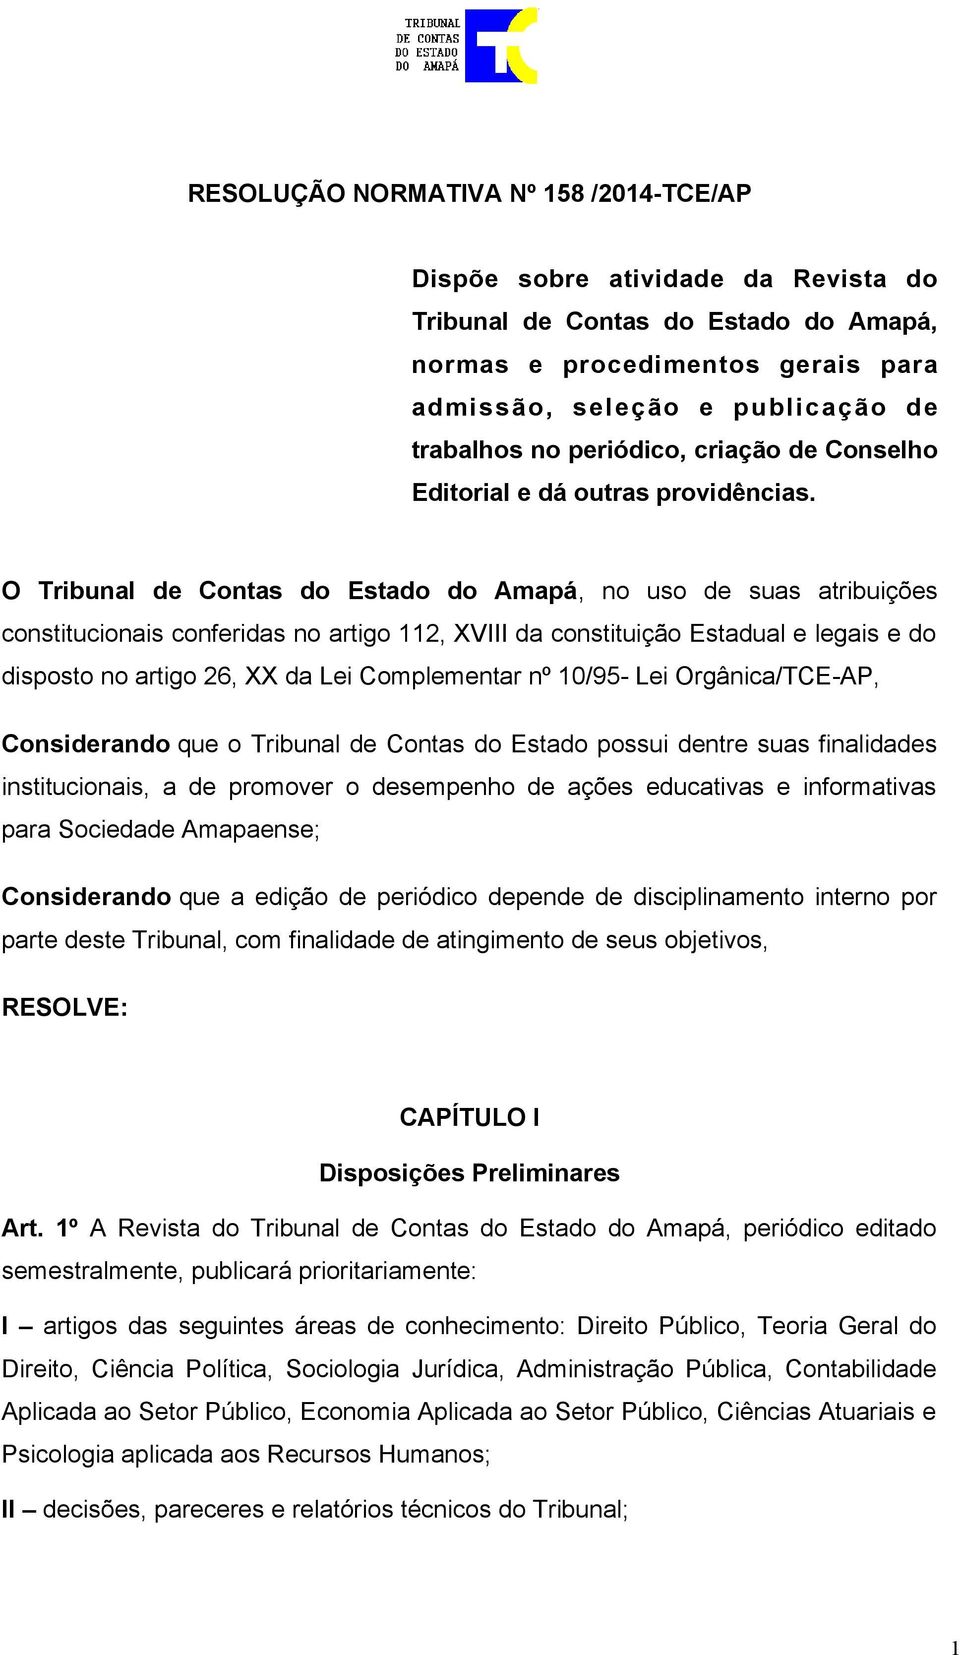 O Tribunal de Contas do Estado do Amapá, no uso de suas atribuições constitucionais conferidas no artigo 112, XVIII da constituição Estadual e legais e do disposto no artigo 26, XX da Lei